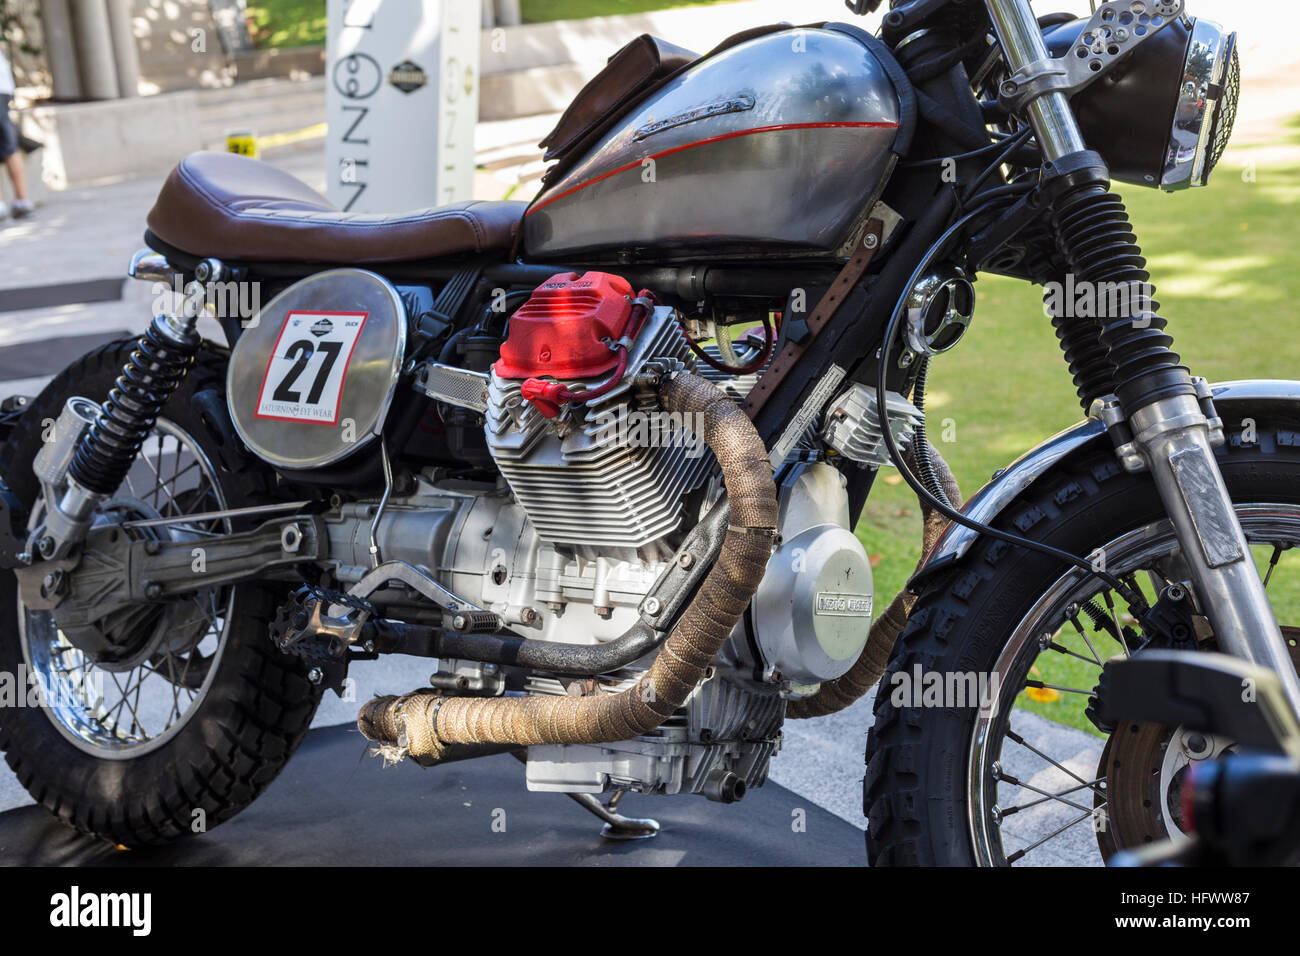 Moto Guzzi customised motorcycle Stock Photo